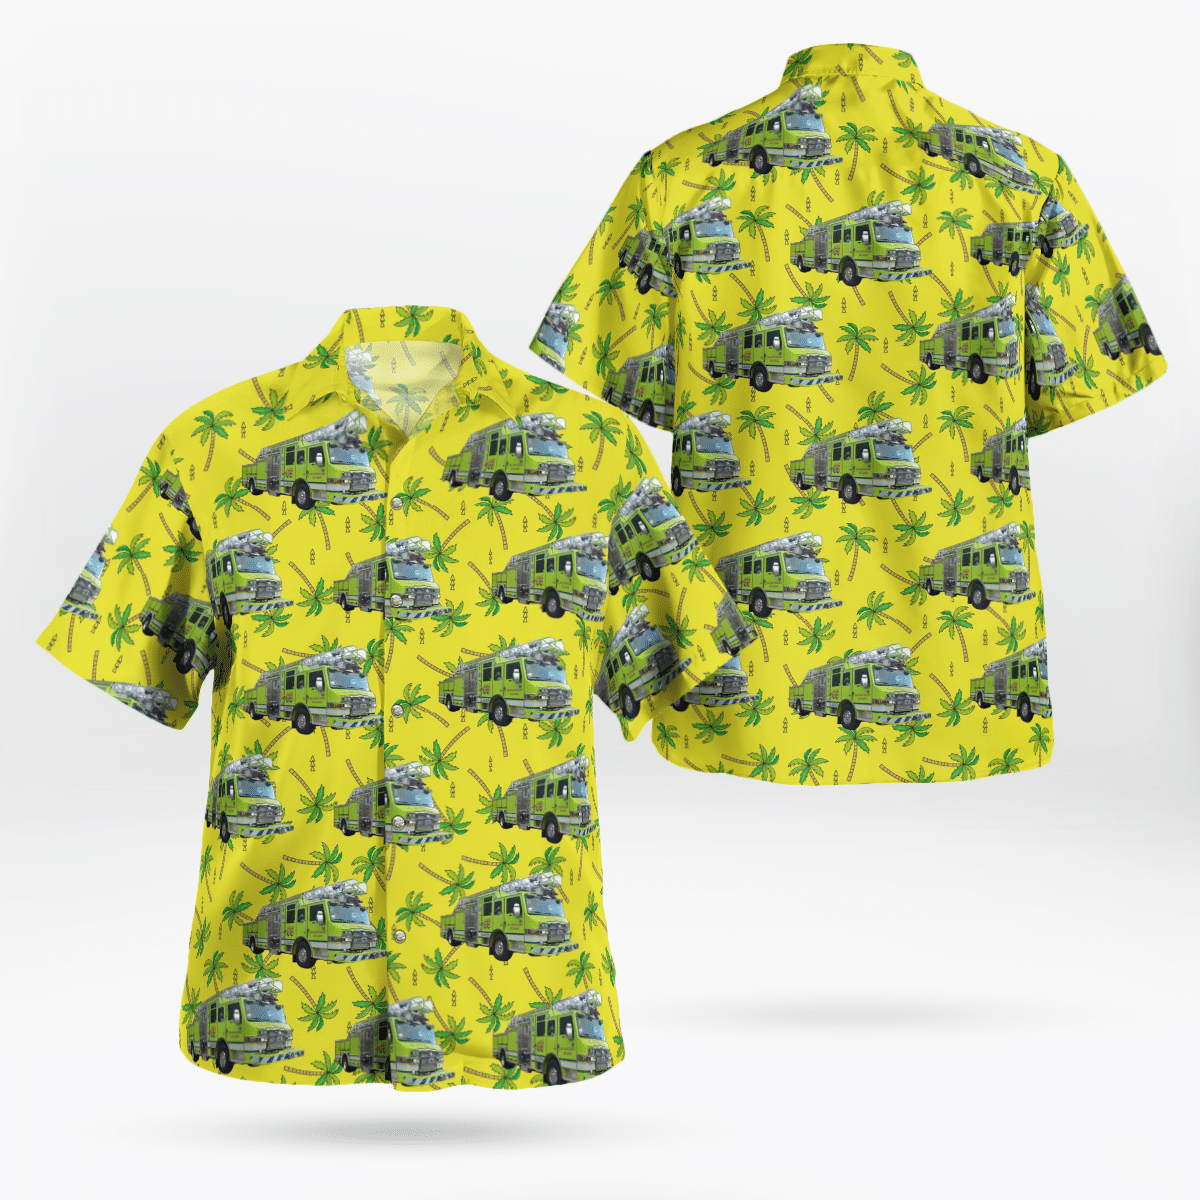 You won't regret buying these Aloha Shirt 35